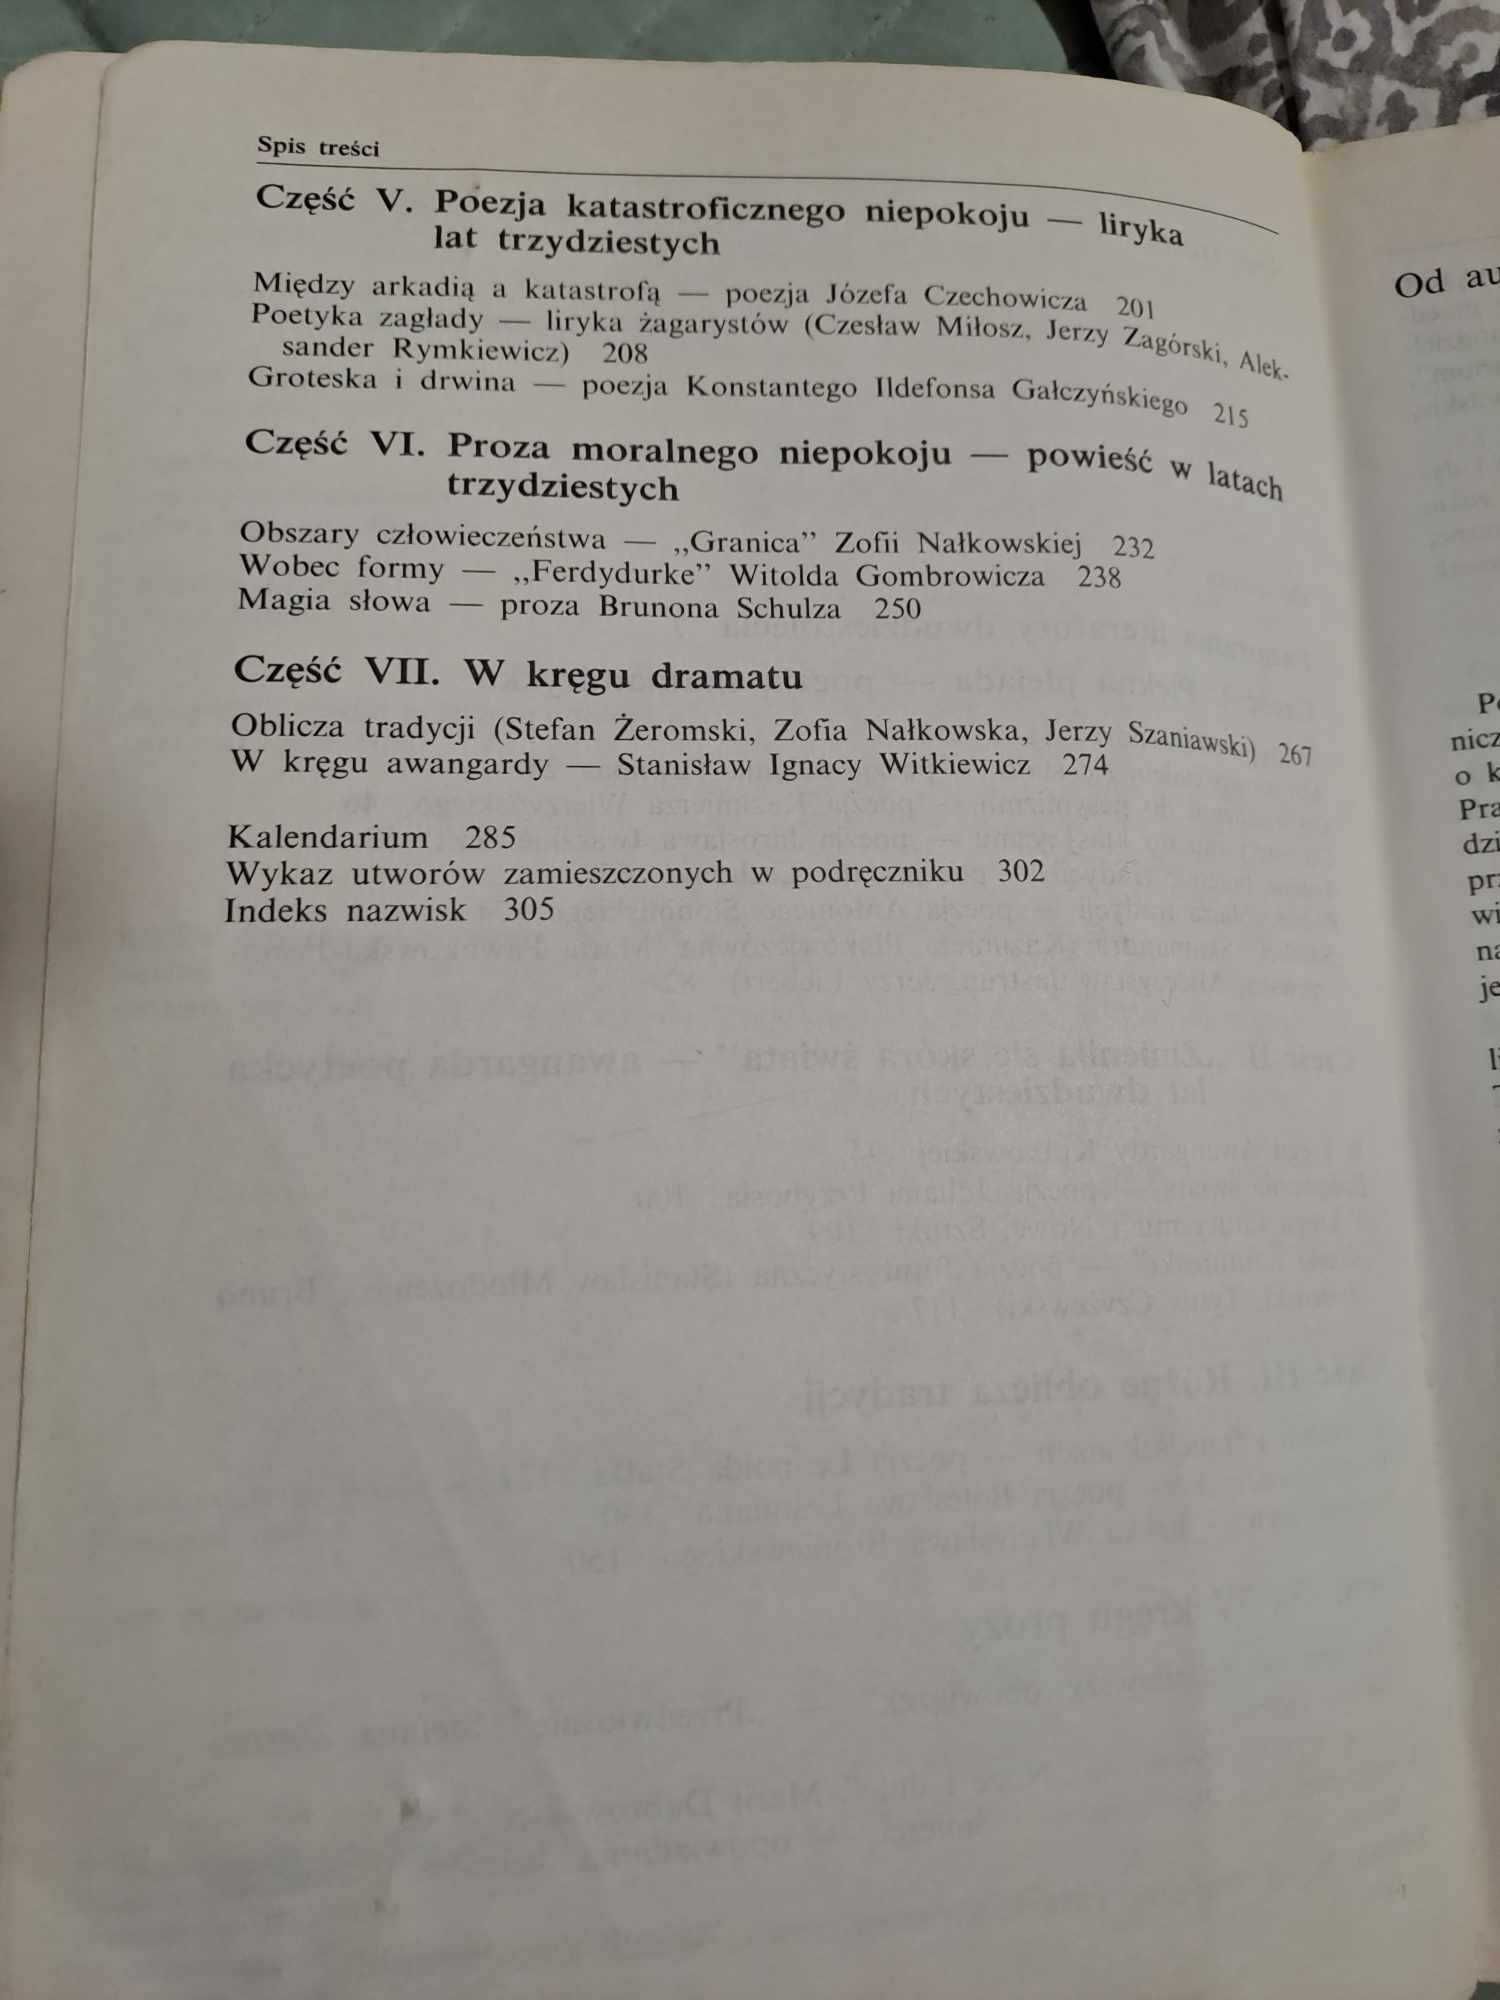 Literatura polska dwudziestolecia... kl. 3 Wroczyński 1994